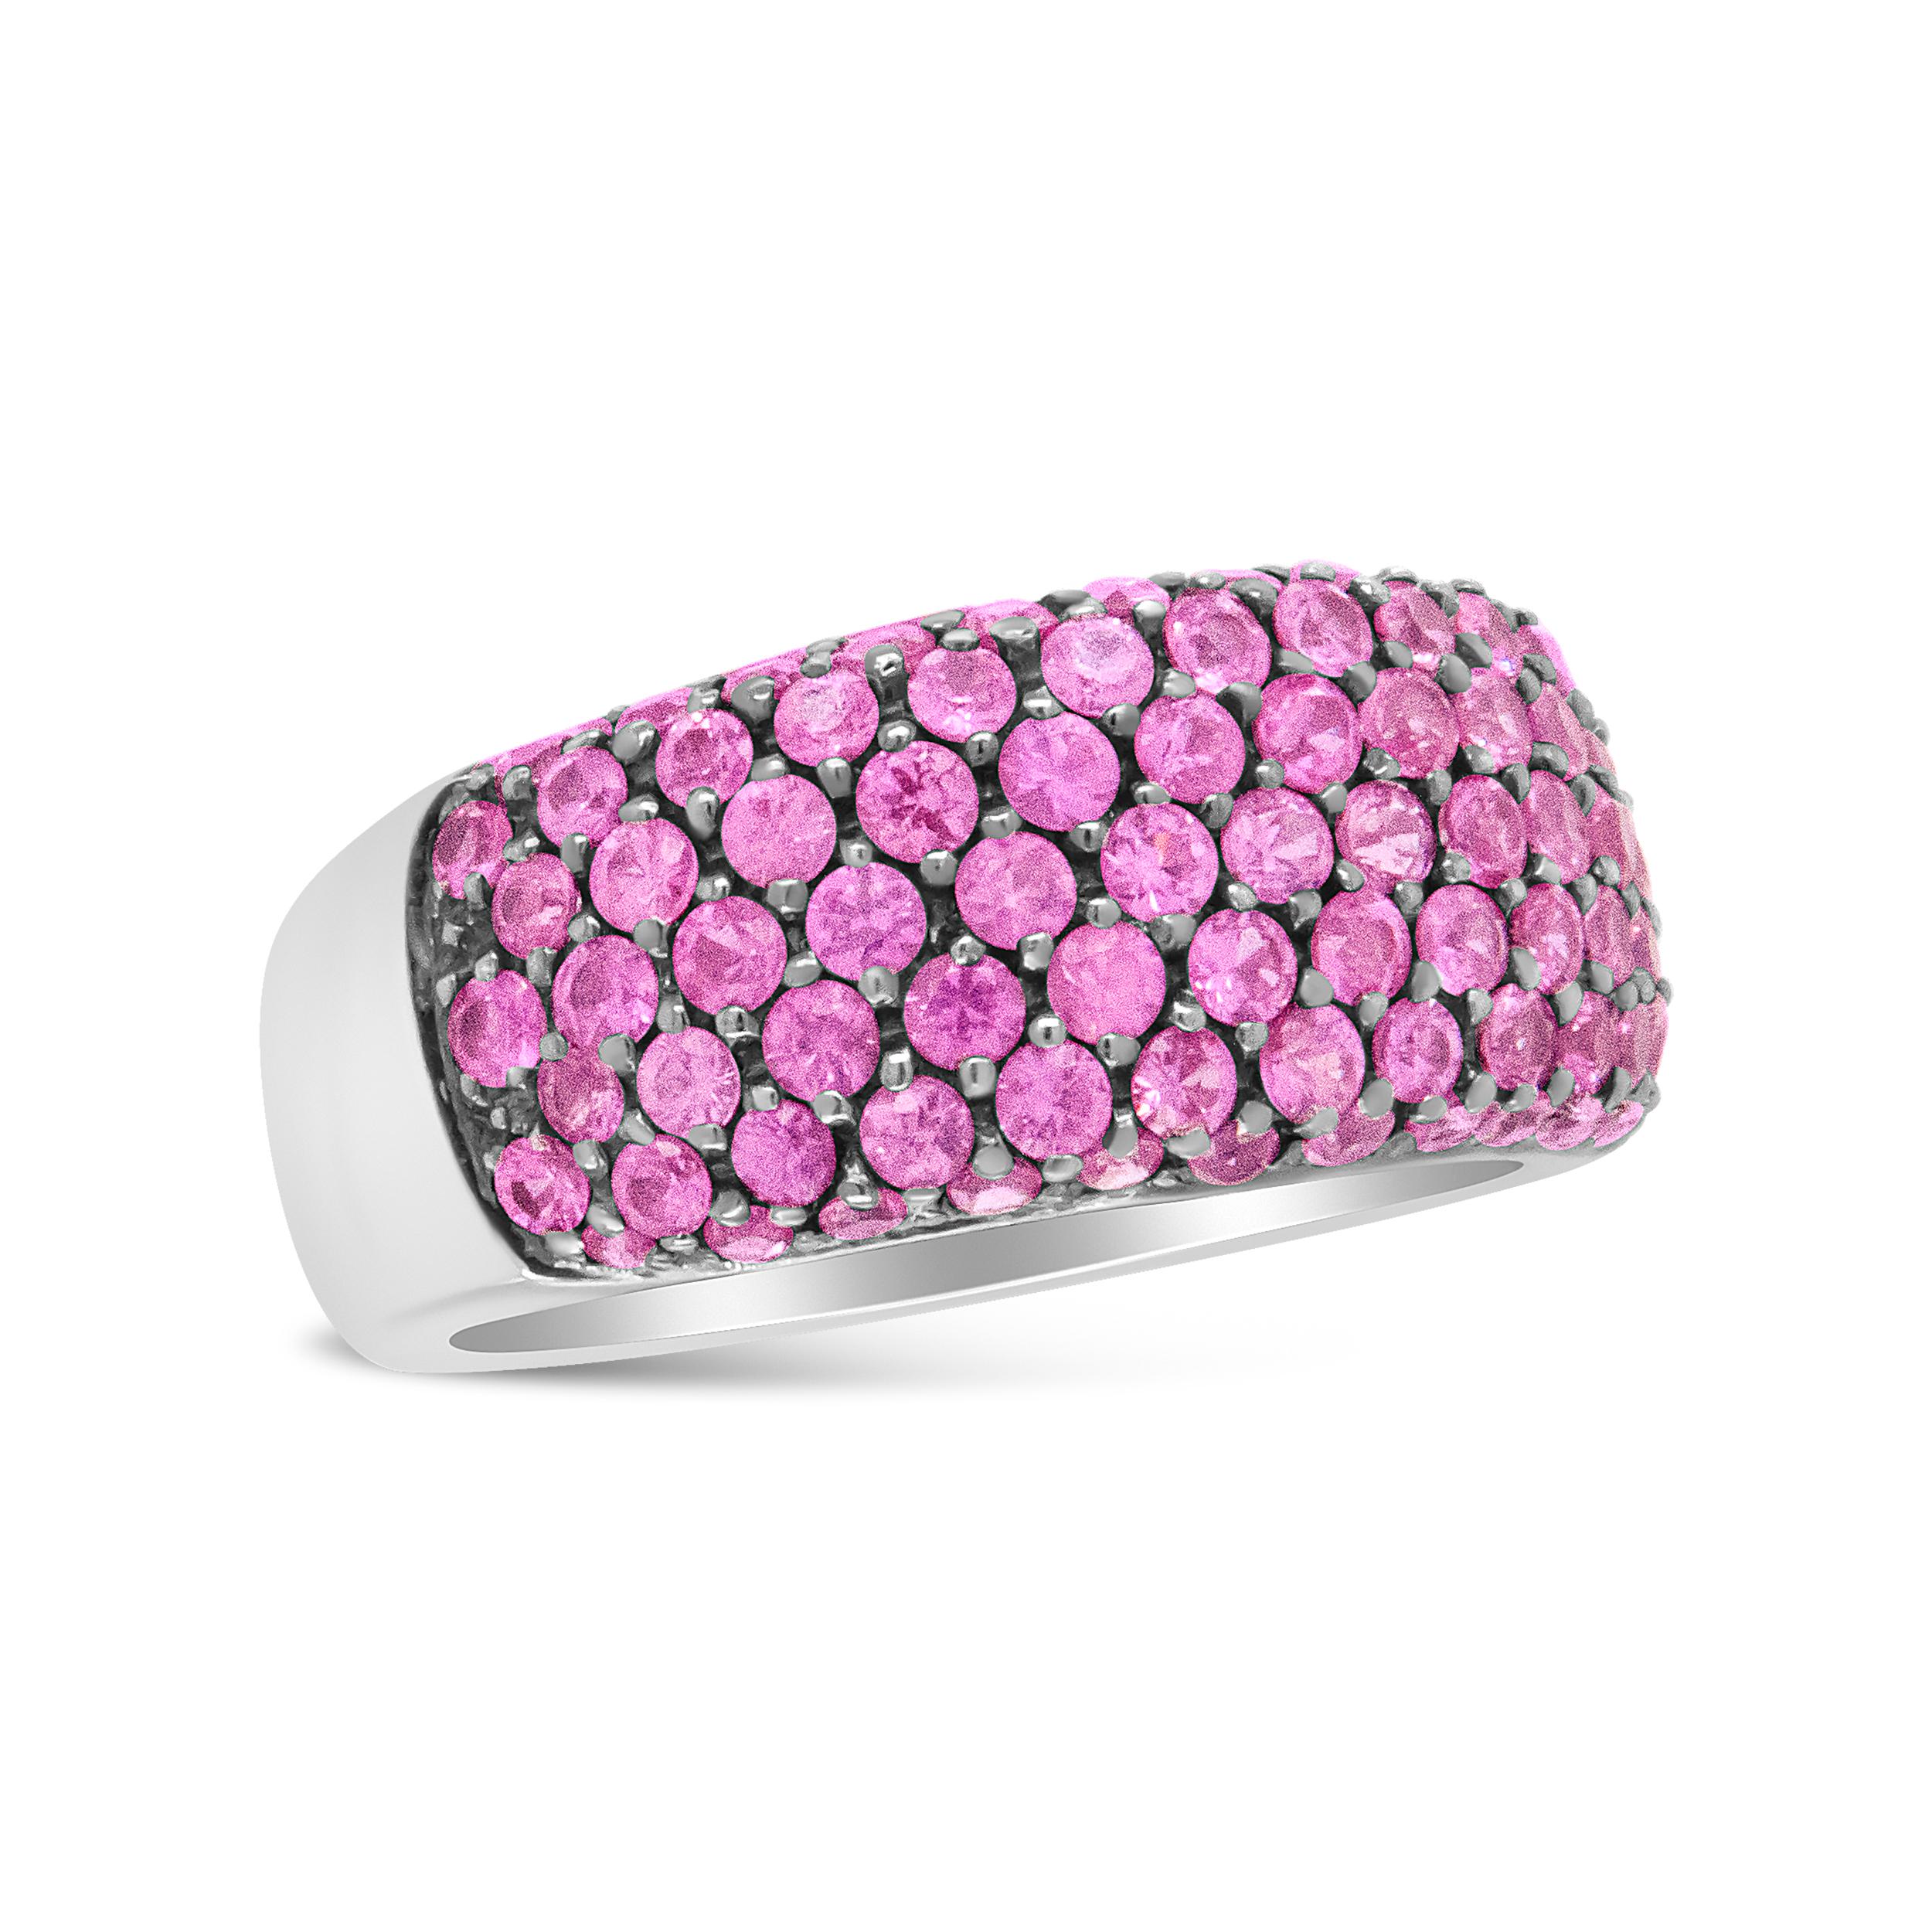 Ein einzigartiges Upgrade zu einem klassischen Diamantring ist dieser wunderschöne, mit rosa Saphiren besetzte Weißgoldring. Die Saphire heben sich auffallend von dem luxuriösen Armband aus 18 Karat Weißgold ab, in das die Steine mit einem